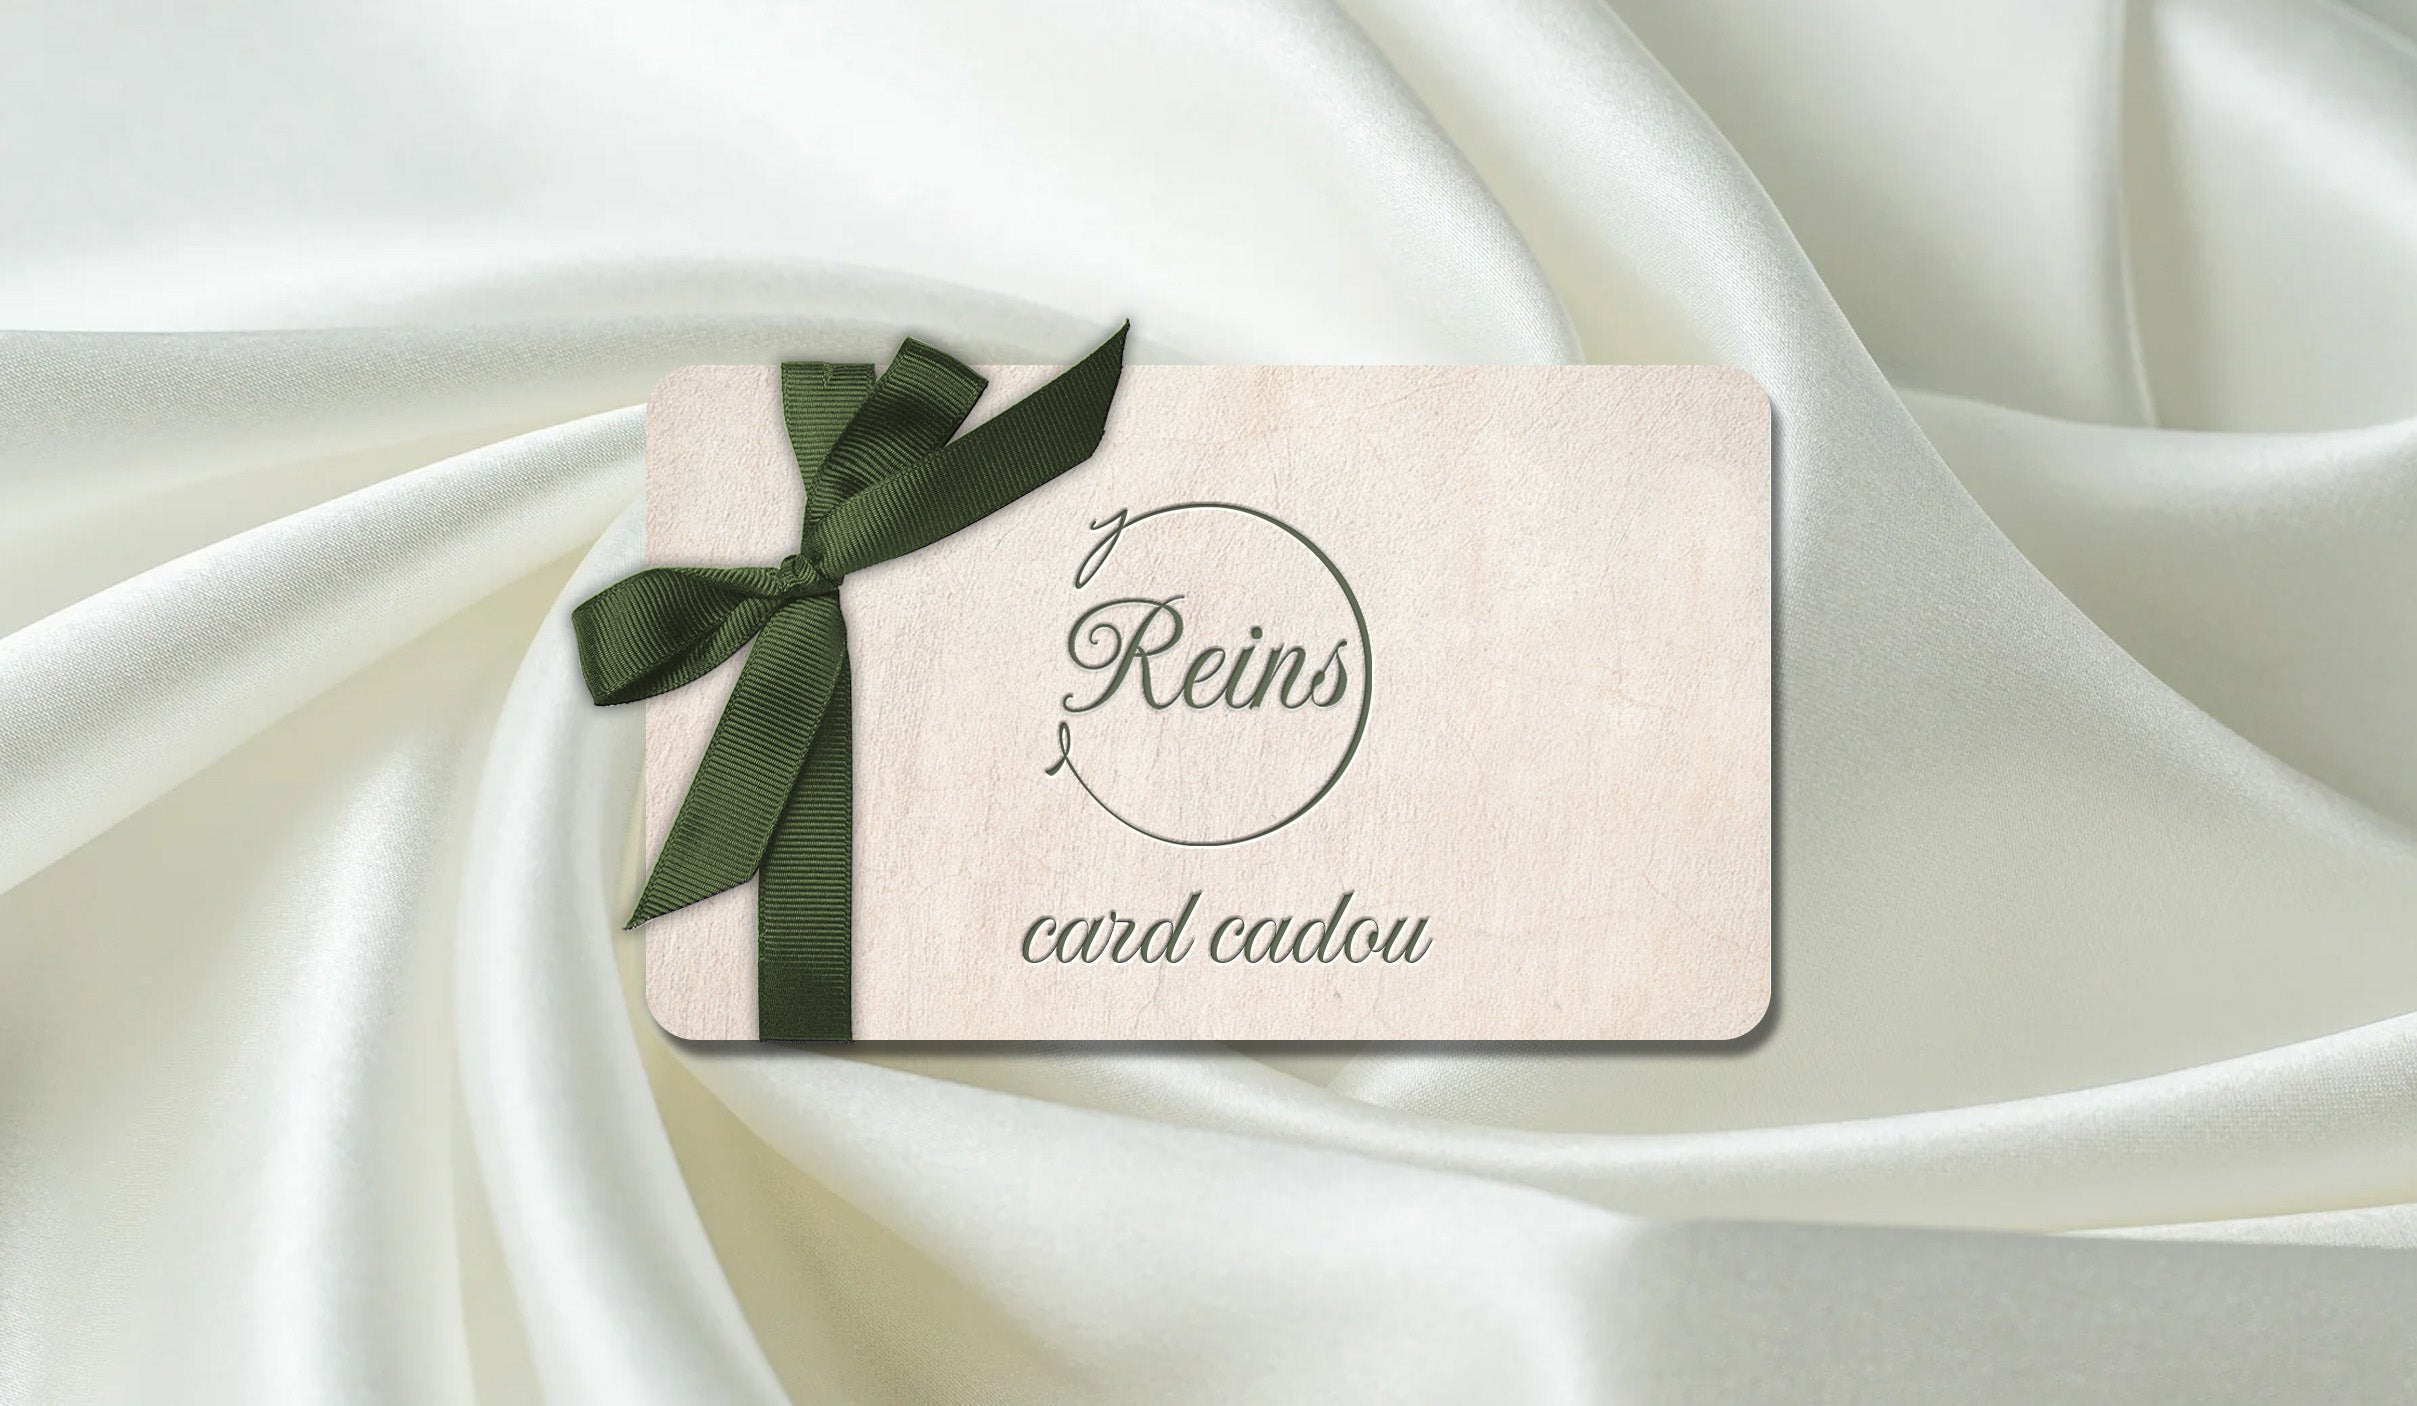 Card cadou Reins pentru bijuterii din argint, poate fi folosit drept cadou pentru mama, cadou pentru iubita sau pentru prietenile tale